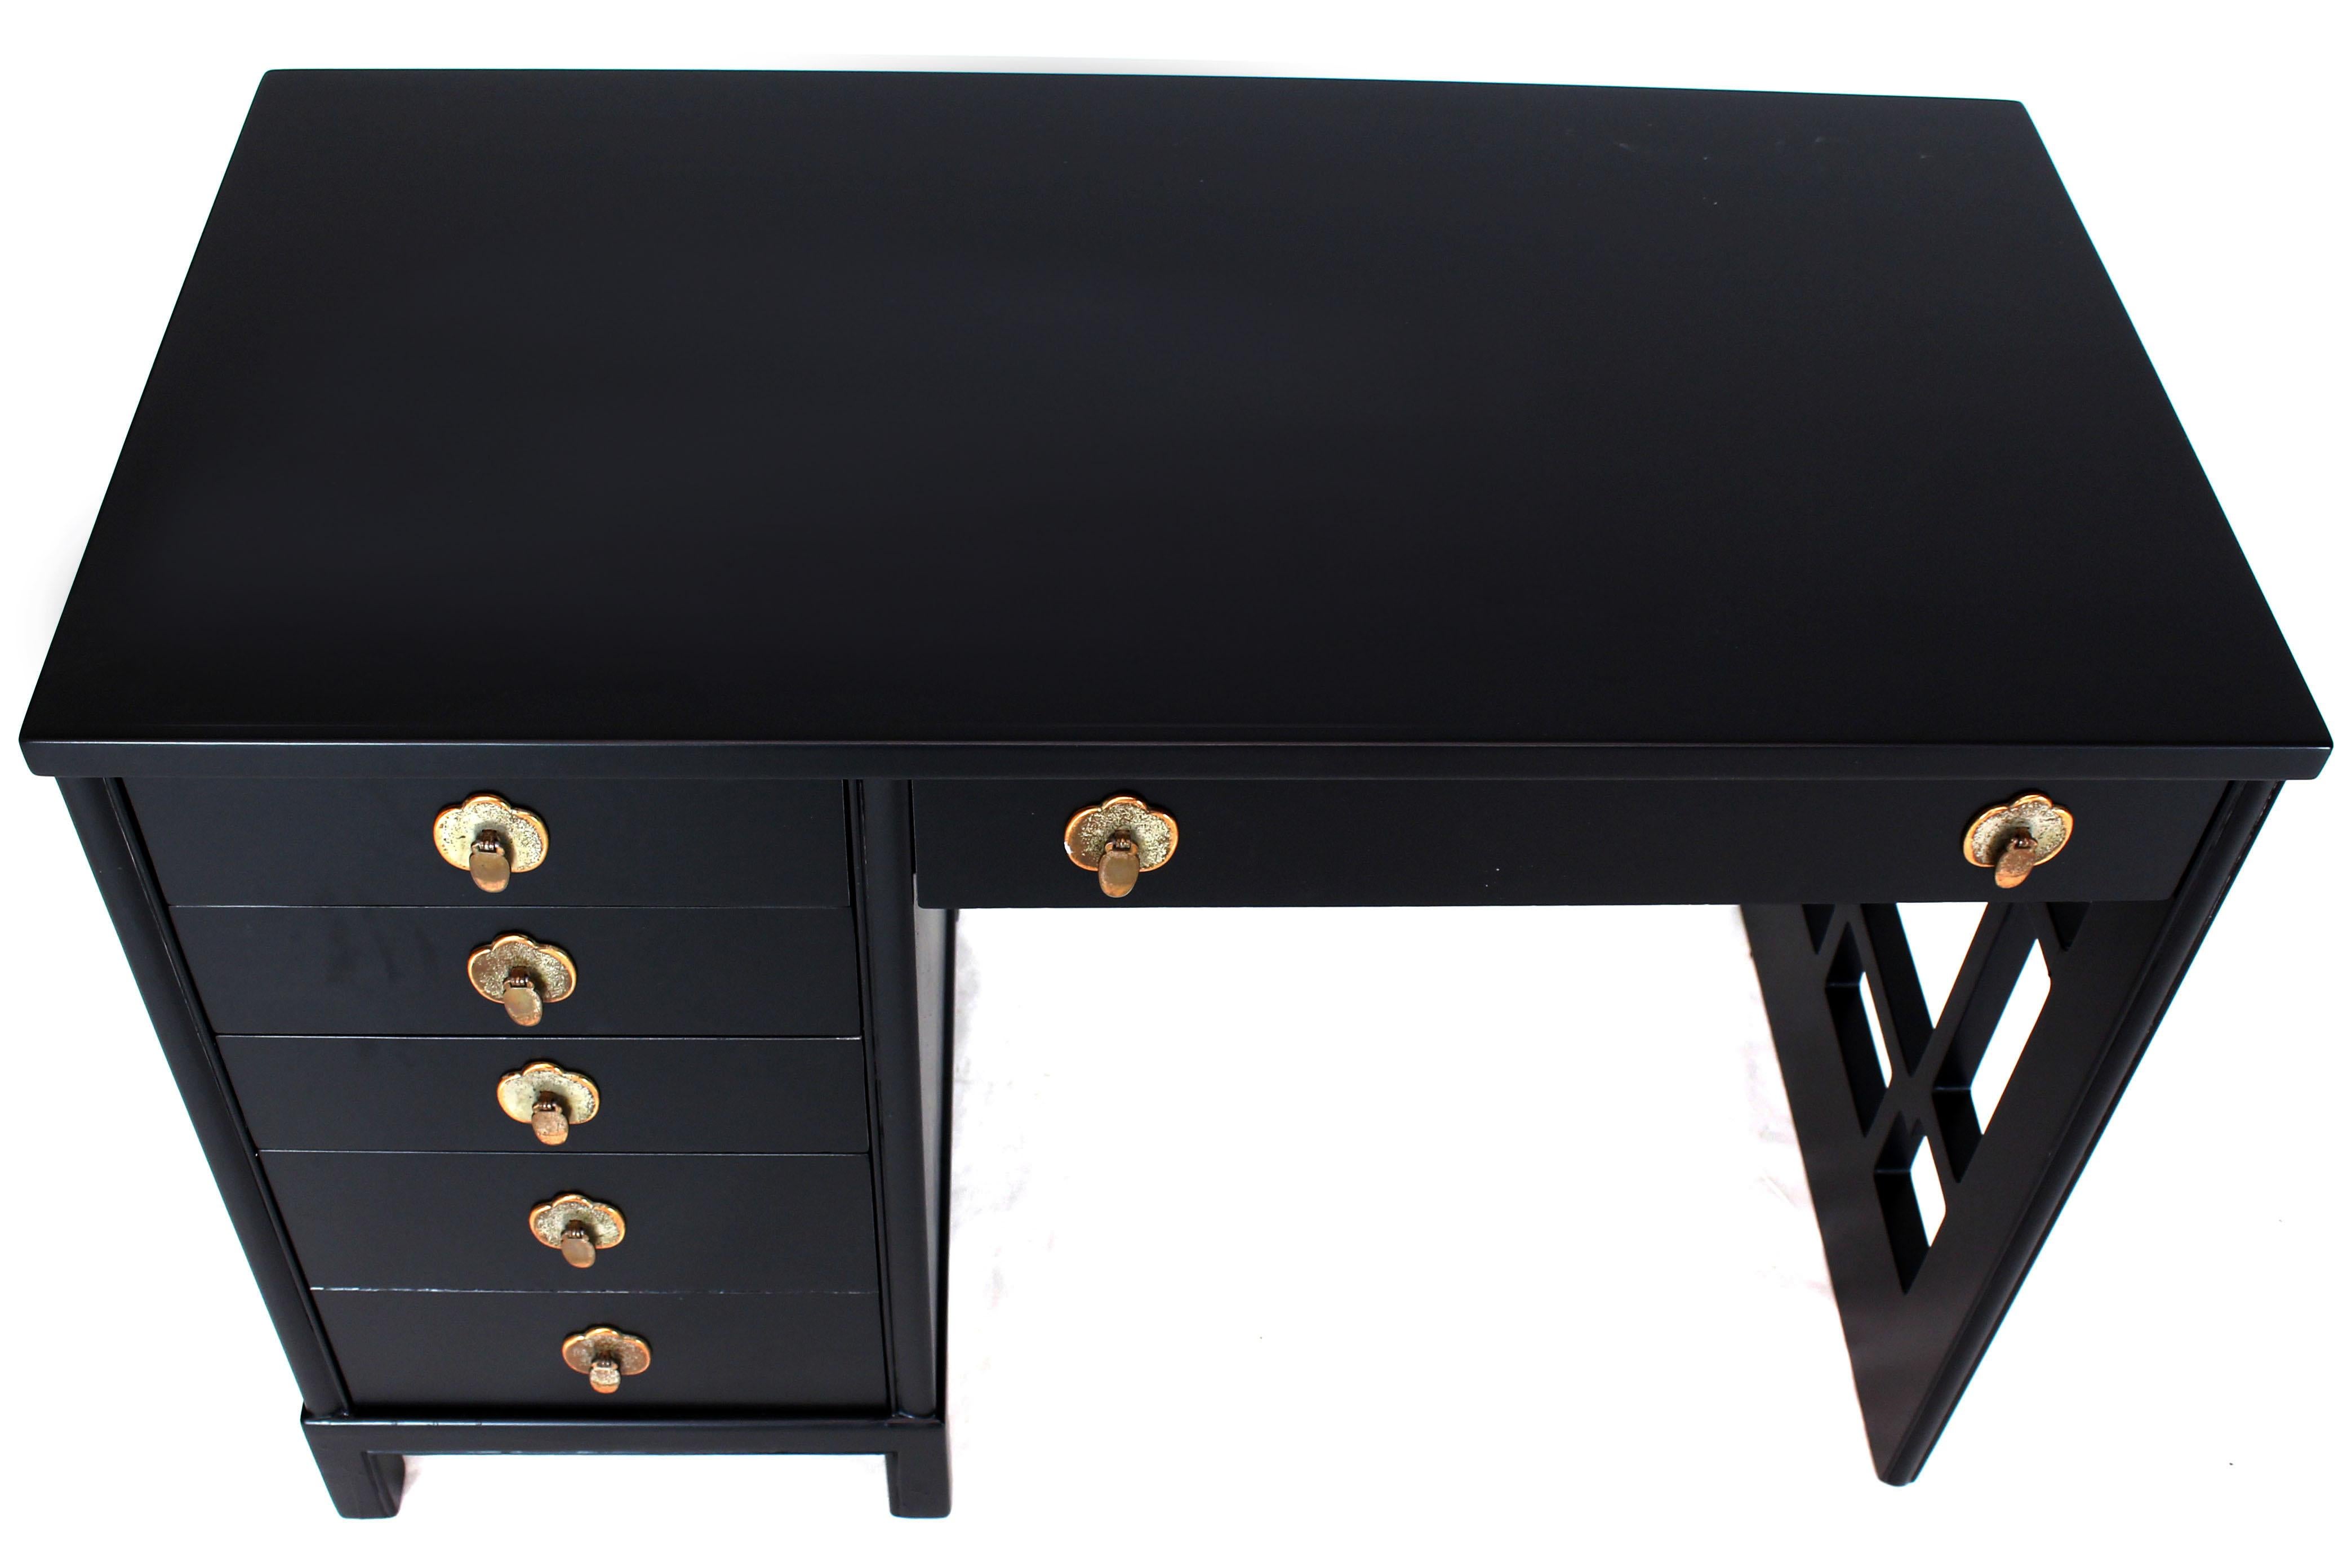 Hardwood Black Lacquer Ebonized Finish Mid-Century Modern Desk Writing Table